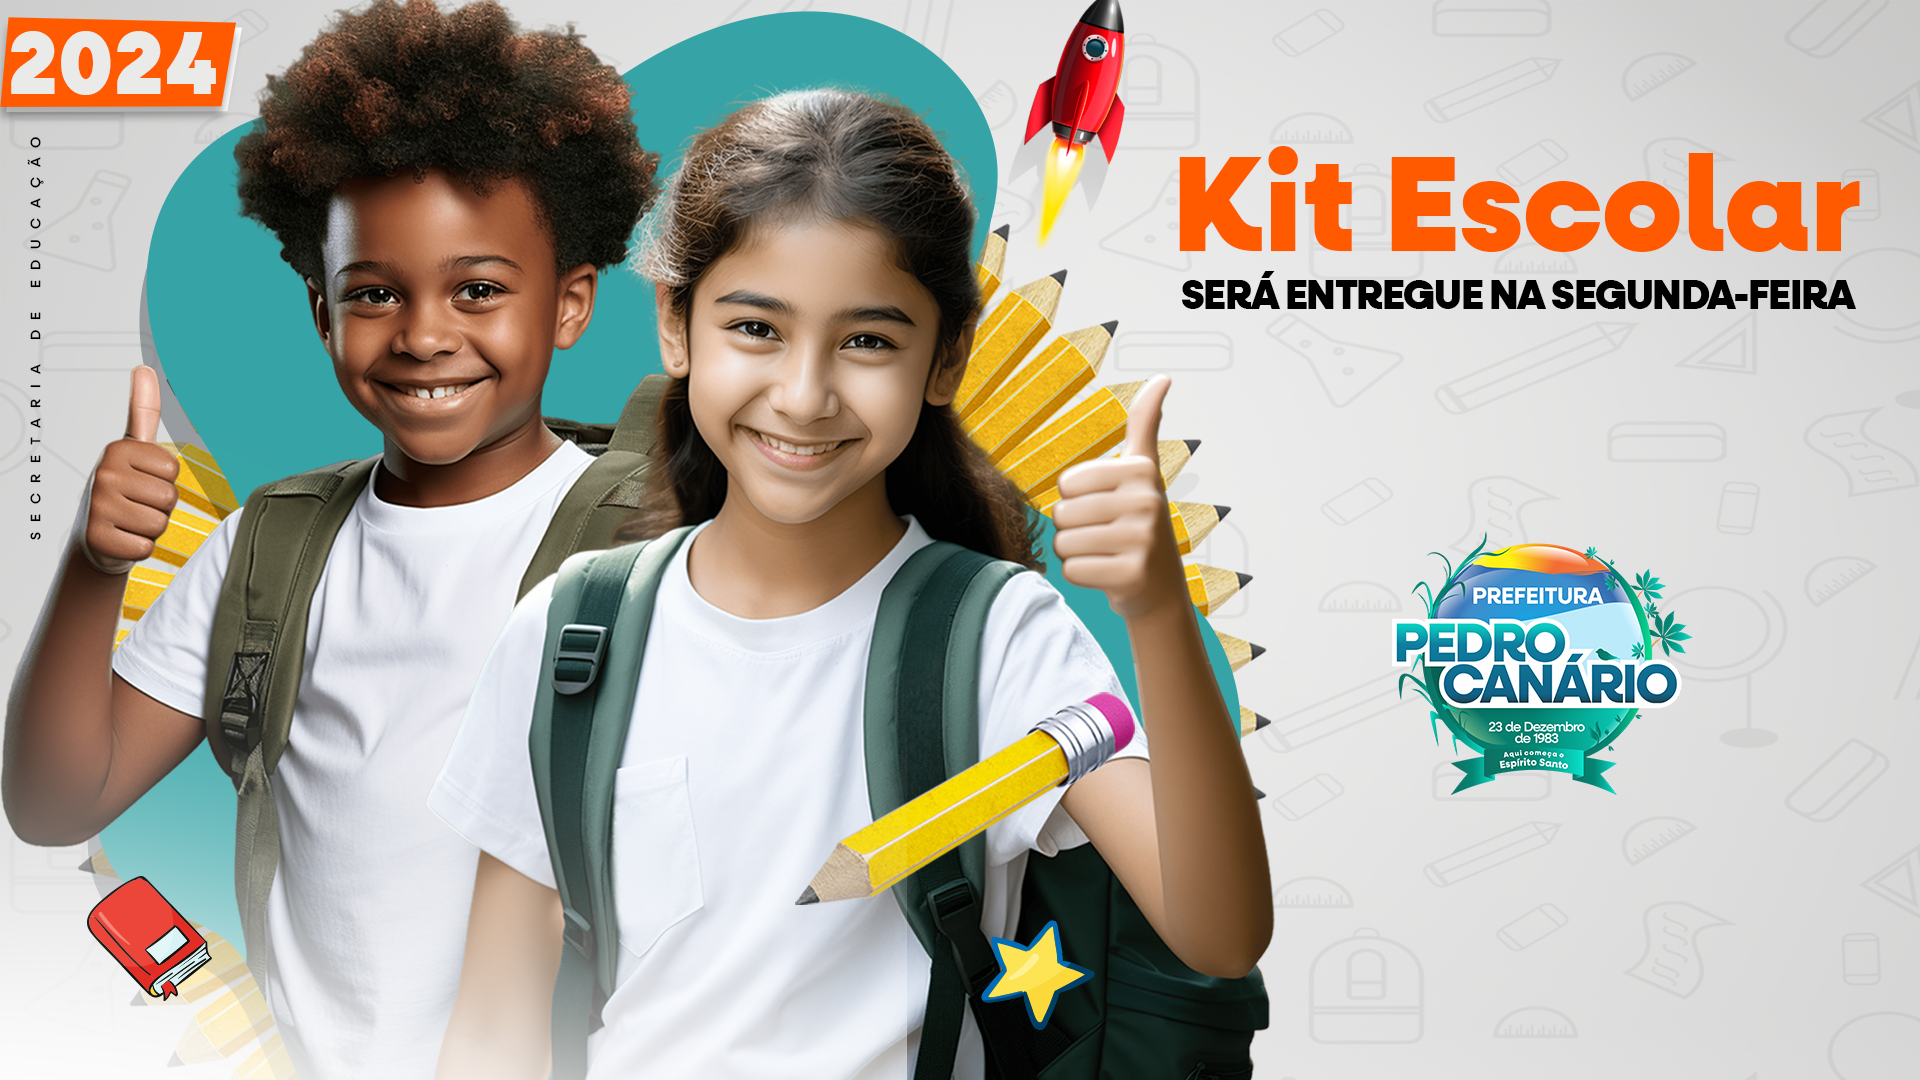 Kit Escolar será entregue a partir desta segunda-feira em Pedro Canário